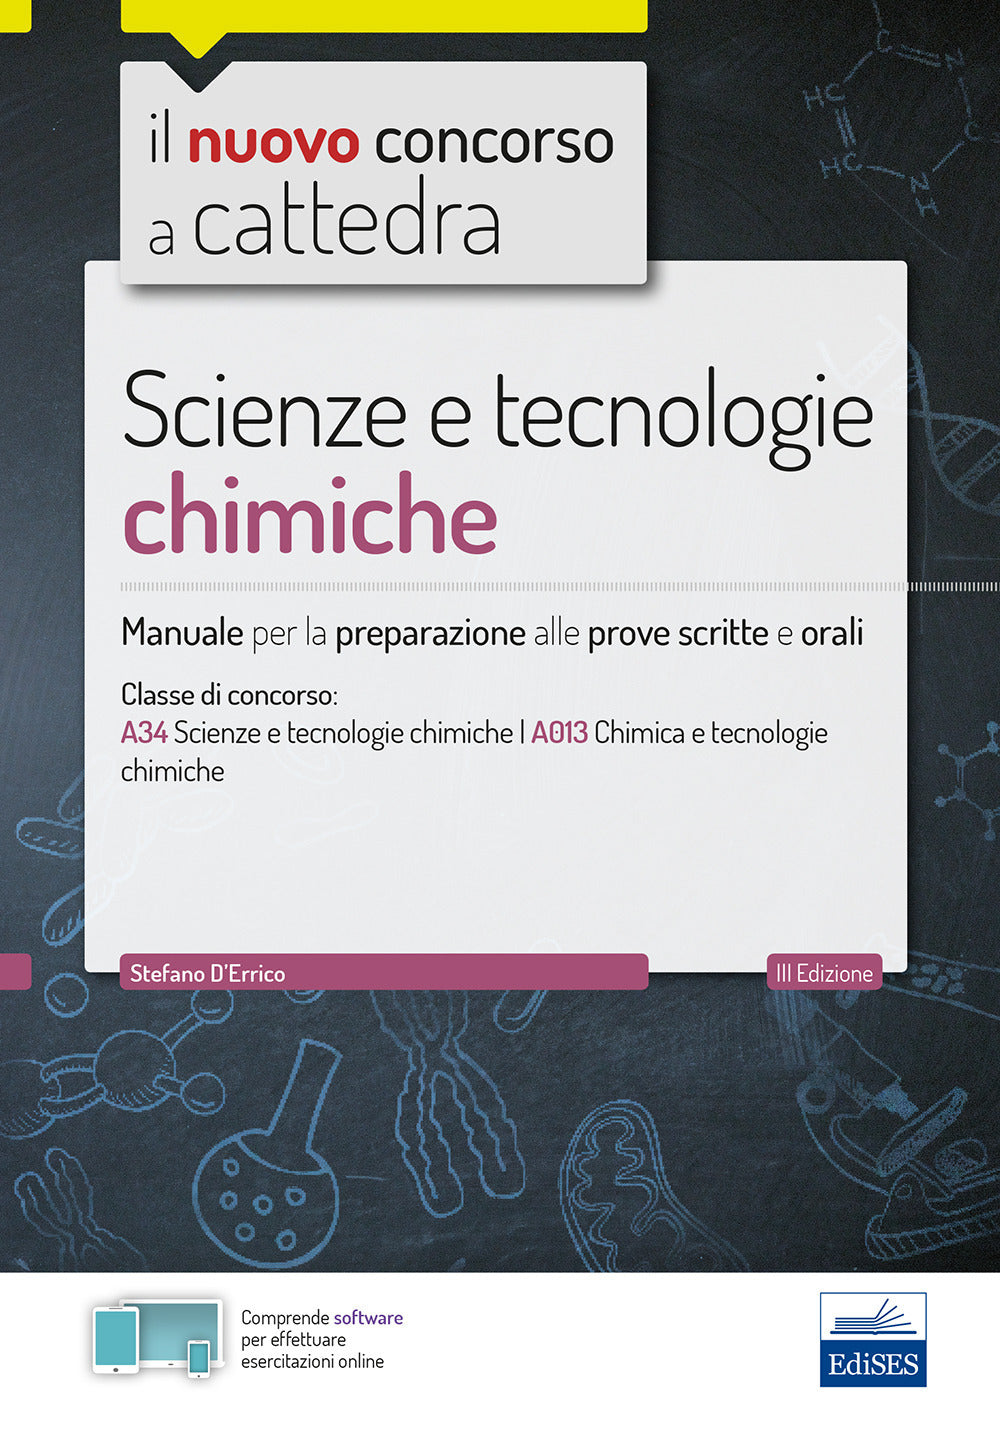 CC 4/55 scienze e tecnologie chimiche. Manuale per la preparazione alle prove scritte e orali. Classi di concorso A34 A013.